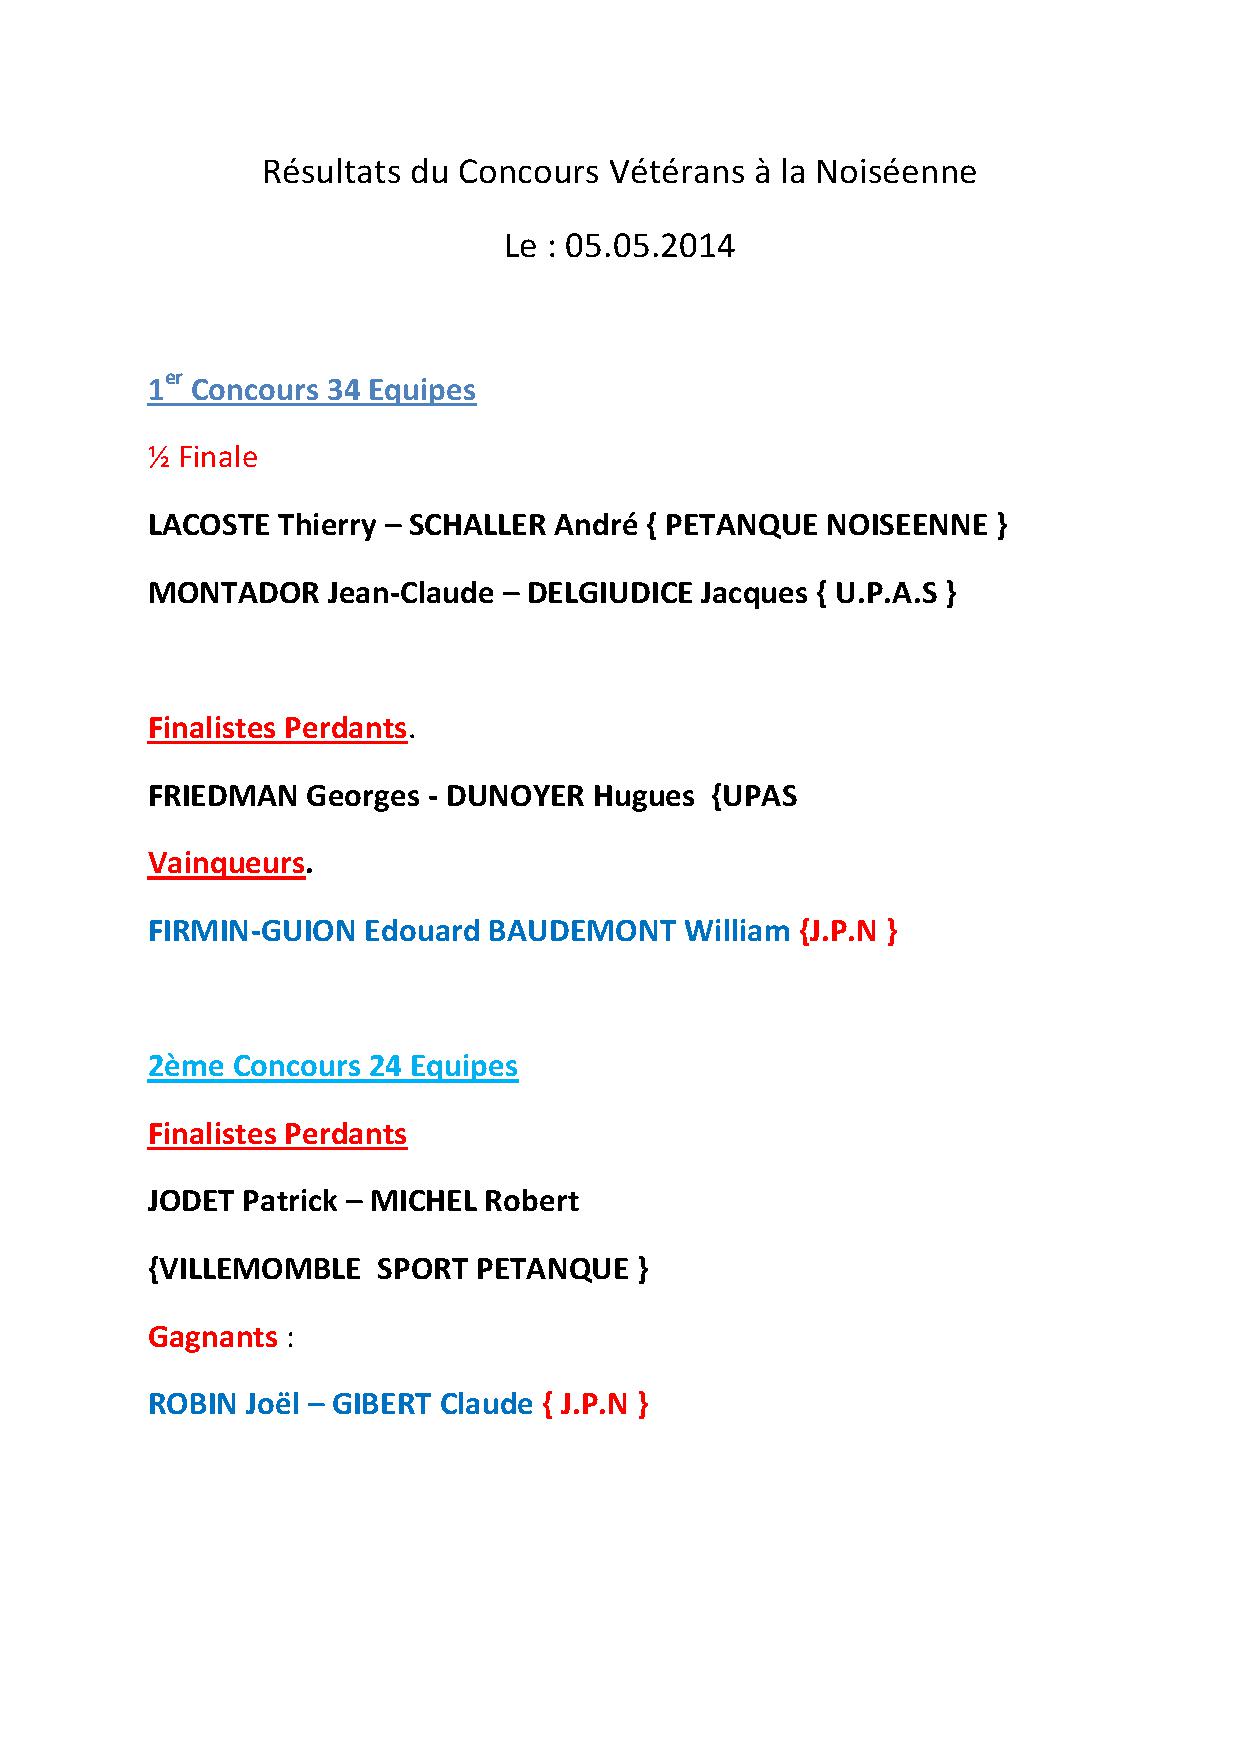 Résultats du Concours Vétérans à la Noiséenne   Le : 05.05.2014